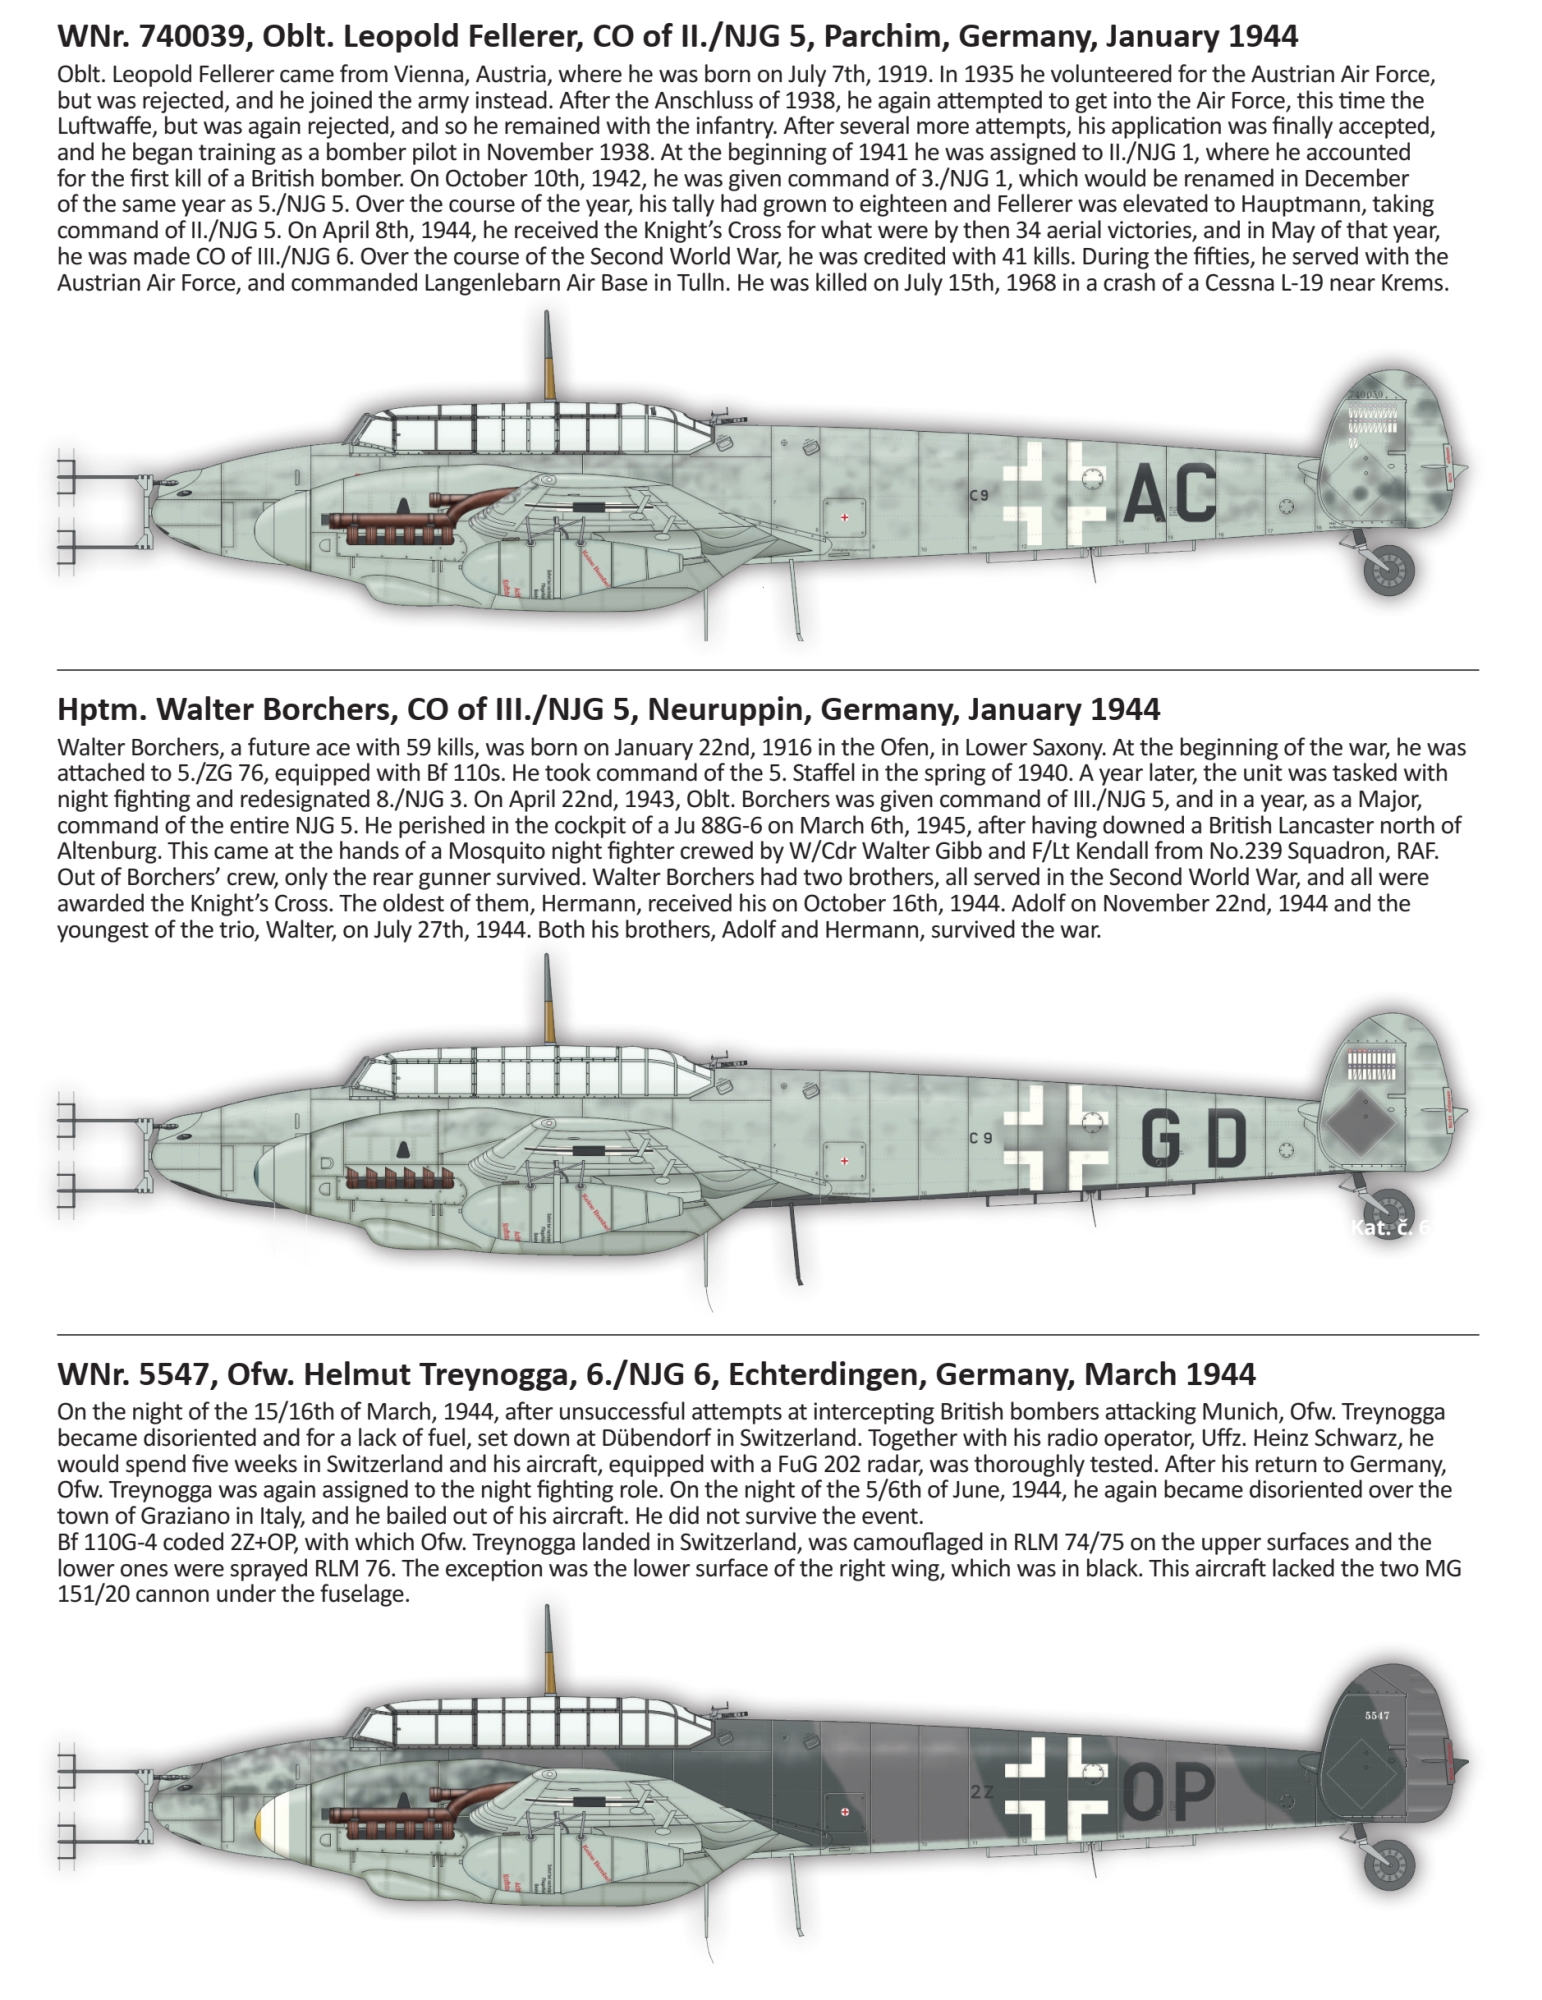 1706507433 413 Messerschmitt Bf 110G 4 Nachtjager